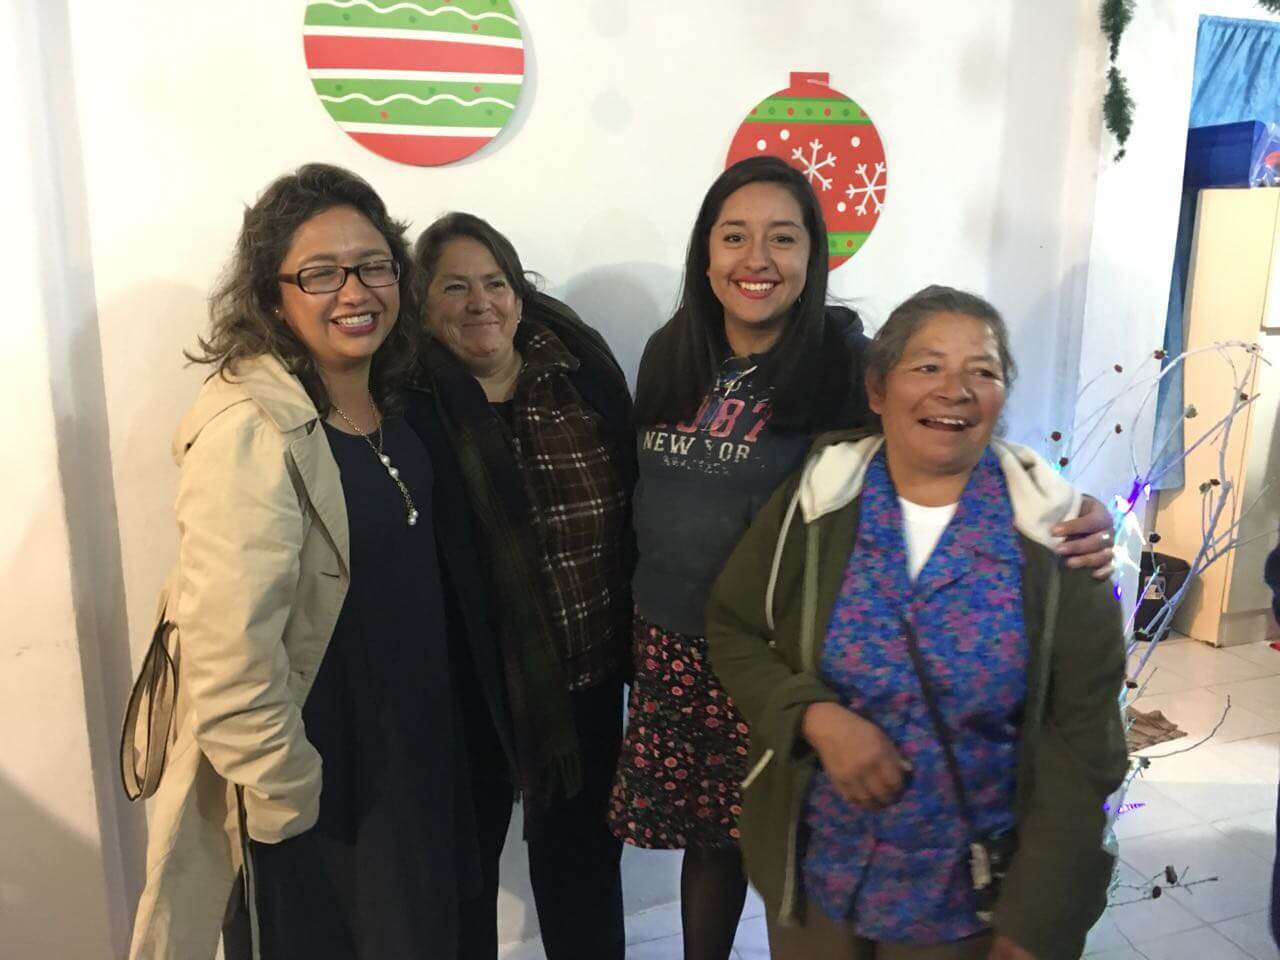 Women's Meeting 15-December-2017 | Centro de Vida Cristiana